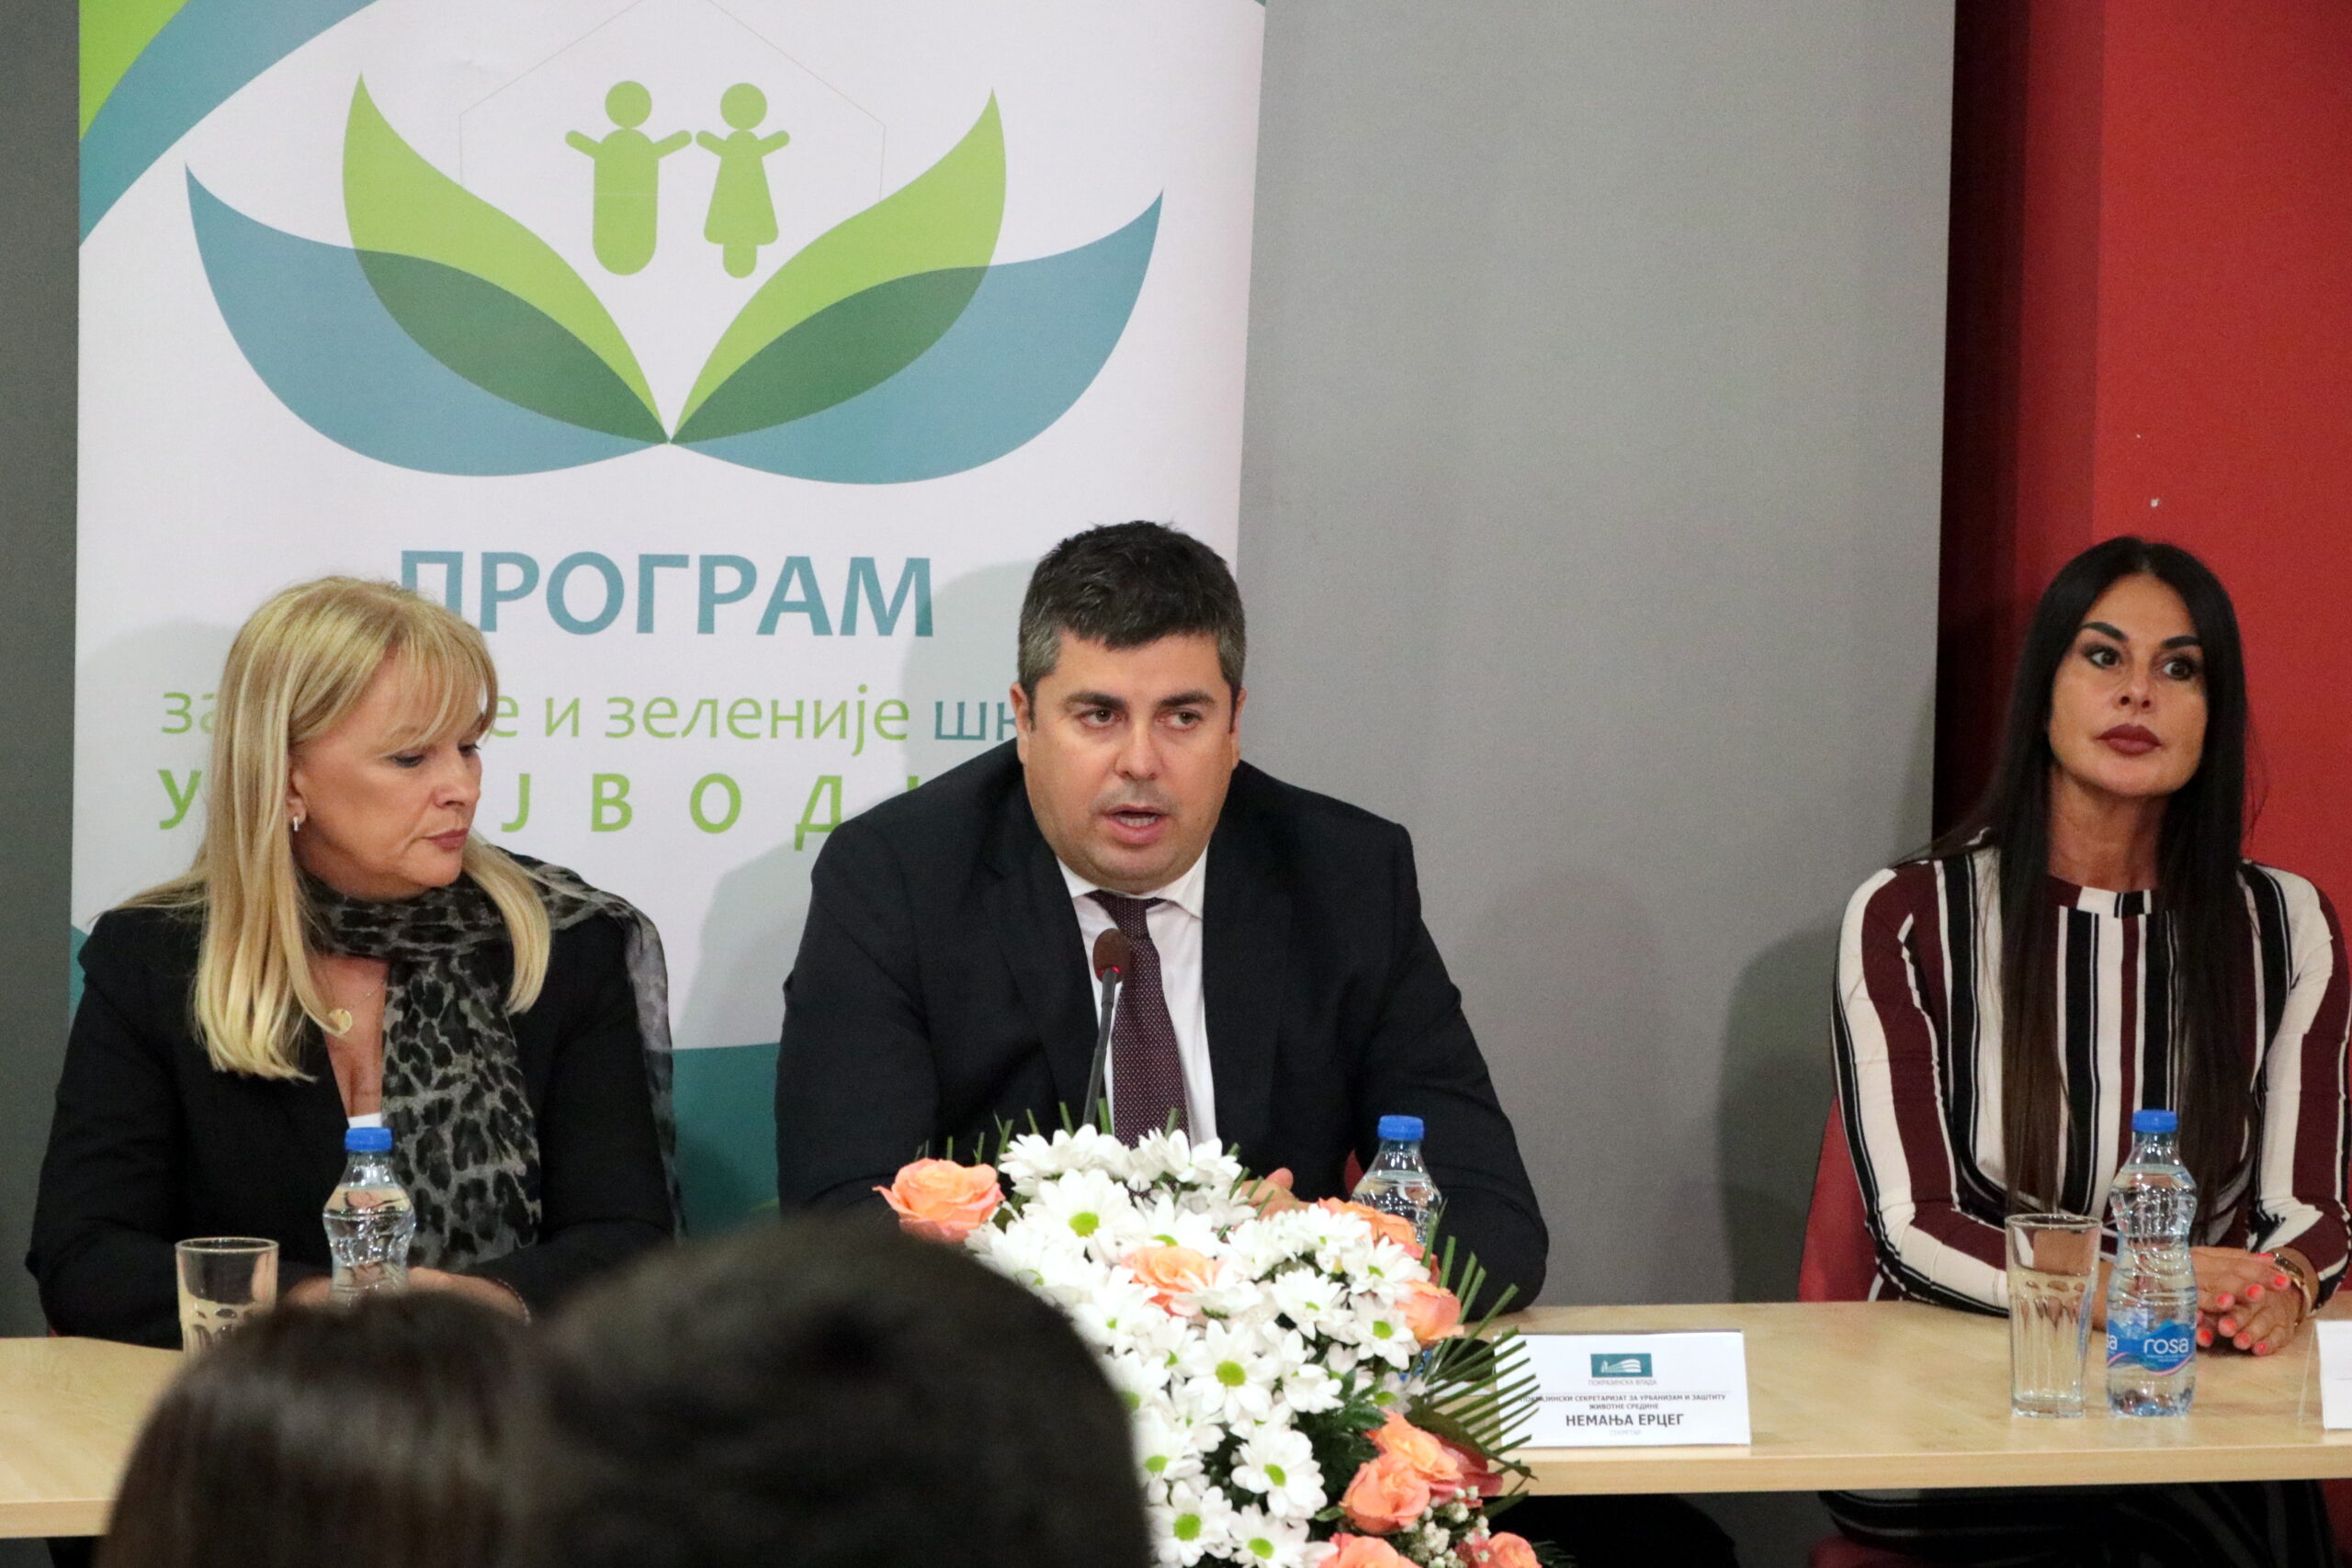 Обележено 15 година реализације програма „За чистије и зеленије школе у Војводини“